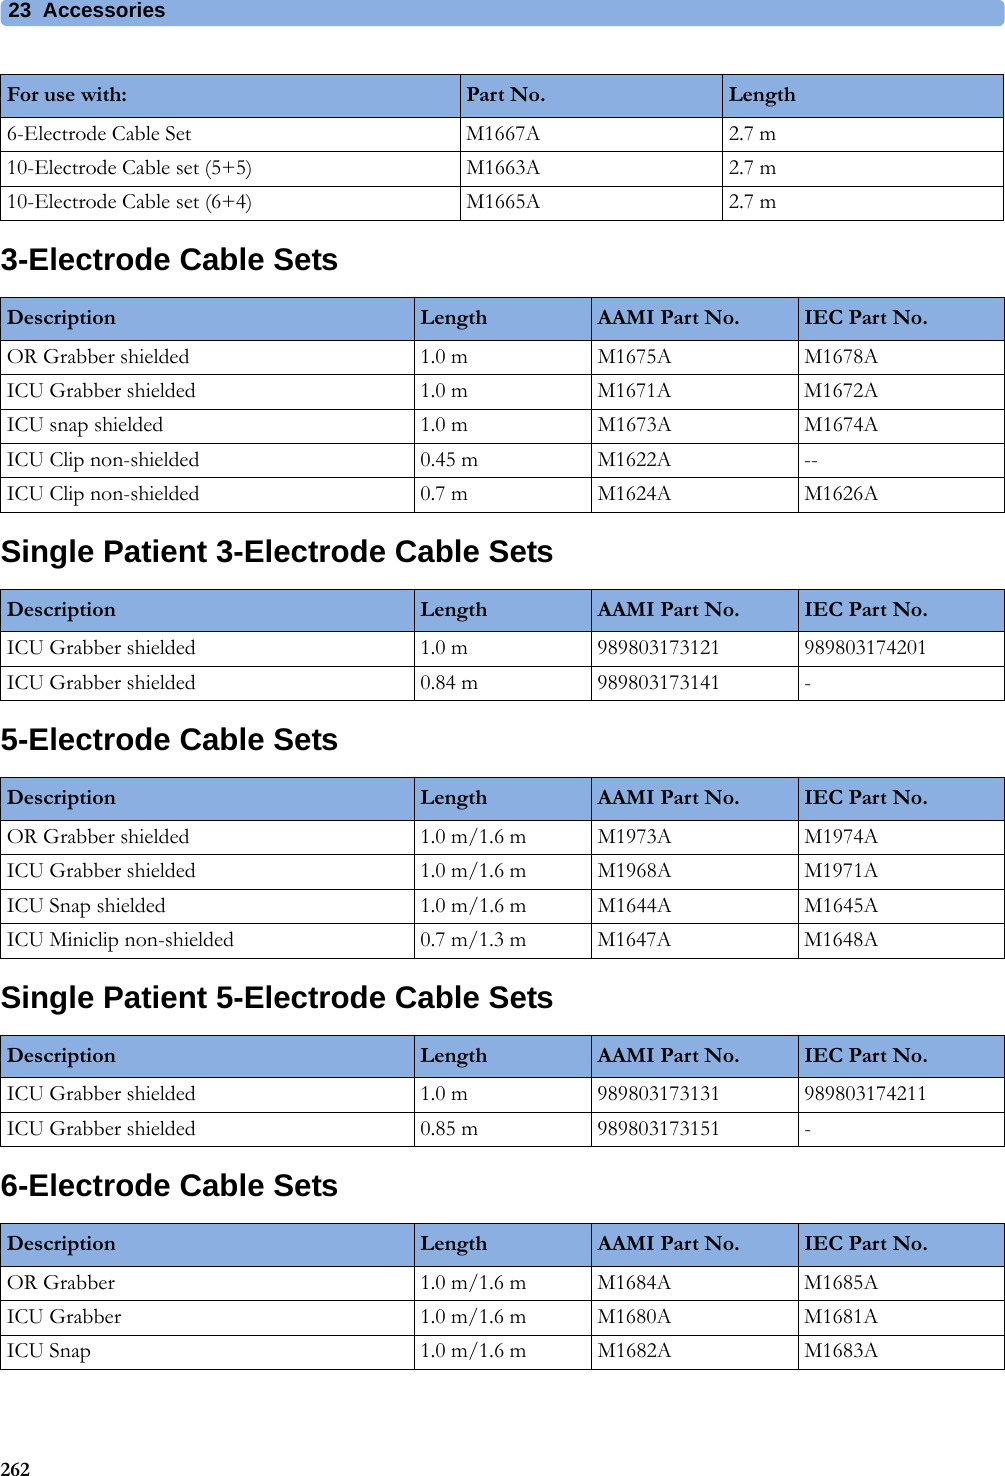 23 Accessories2623-Electrode Cable SetsSingle Patient 3-Electrode Cable Sets5-Electrode Cable SetsSingle Patient 5-Electrode Cable Sets6-Electrode Cable Sets6-Electrode Cable Set M1667A 2.7 m10-Electrode Cable set (5+5) M1663A 2.7 m10-Electrode Cable set (6+4) M1665A 2.7 mFor use with: Part No. LengthDescription Length AAMI Part No. IEC Part No.OR Grabber shielded 1.0 m M1675A M1678AICU Grabber shielded 1.0 m M1671A M1672AICU snap shielded 1.0 m M1673A M1674AICU Clip non-shielded 0.45 m M1622A --ICU Clip non-shielded 0.7 m M1624A M1626ADescription Length AAMI Part No. IEC Part No.ICU Grabber shielded 1.0 m 989803173121 989803174201ICU Grabber shielded 0.84 m 989803173141 -Description Length AAMI Part No. IEC Part No.OR Grabber shielded 1.0 m/1.6 m M1973A M1974AICU Grabber shielded 1.0 m/1.6 m M1968A M1971AICU Snap shielded 1.0 m/1.6 m M1644A M1645AICU Miniclip non-shielded 0.7 m/1.3 m M1647A M1648ADescription Length AAMI Part No. IEC Part No.ICU Grabber shielded 1.0 m 989803173131 989803174211ICU Grabber shielded 0.85 m 989803173151 -Description Length AAMI Part No. IEC Part No.OR Grabber 1.0 m/1.6 m M1684A M1685AICU Grabber 1.0 m/1.6 m M1680A M1681AICU Snap 1.0 m/1.6 m M1682A M1683A